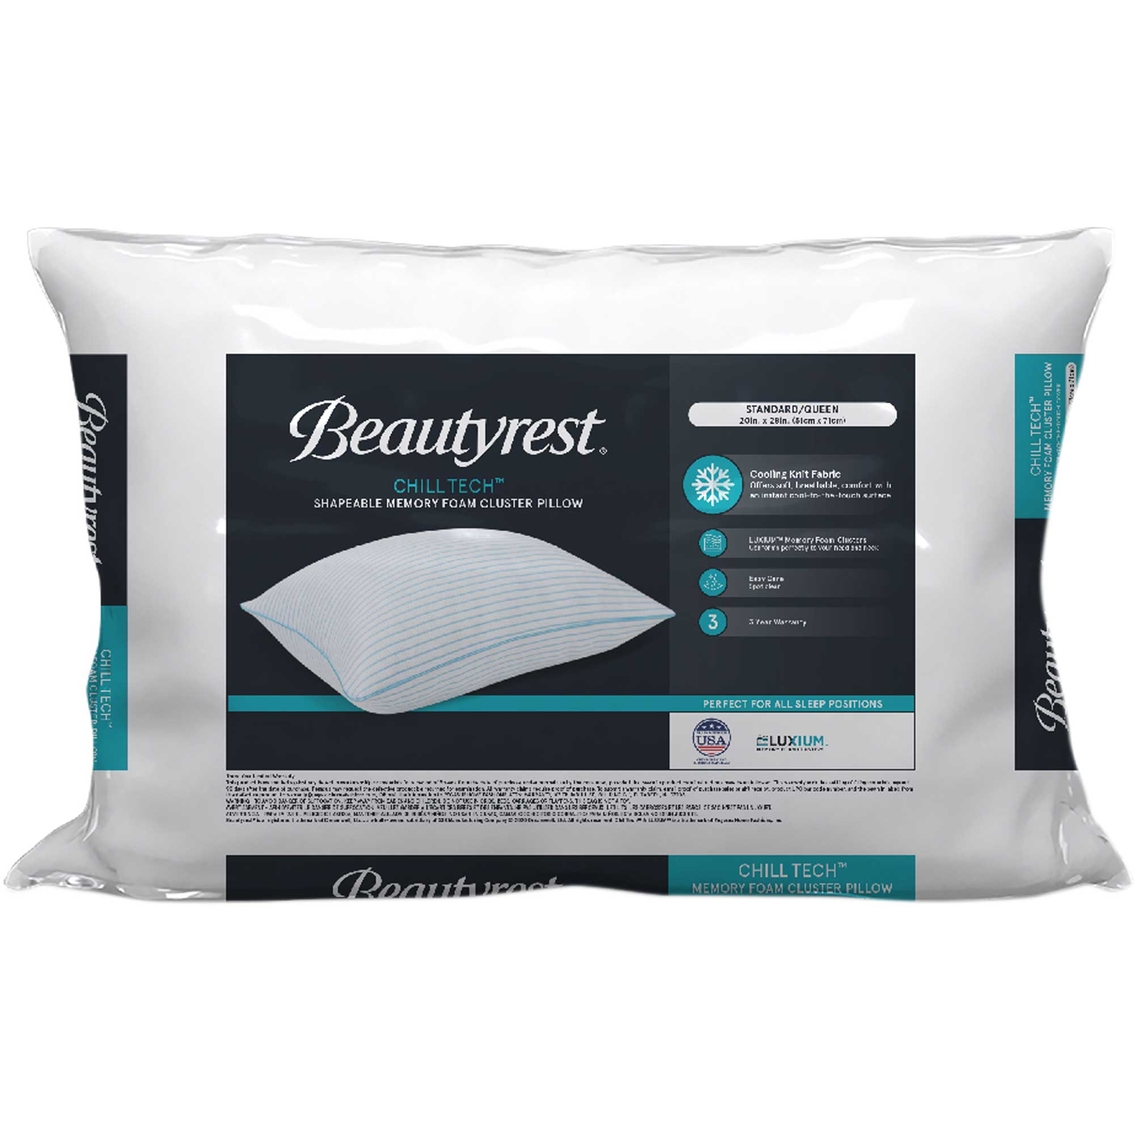 Beautyrest Chill Tech Memory Foam Cluster Pillow | Bed Pillows ...